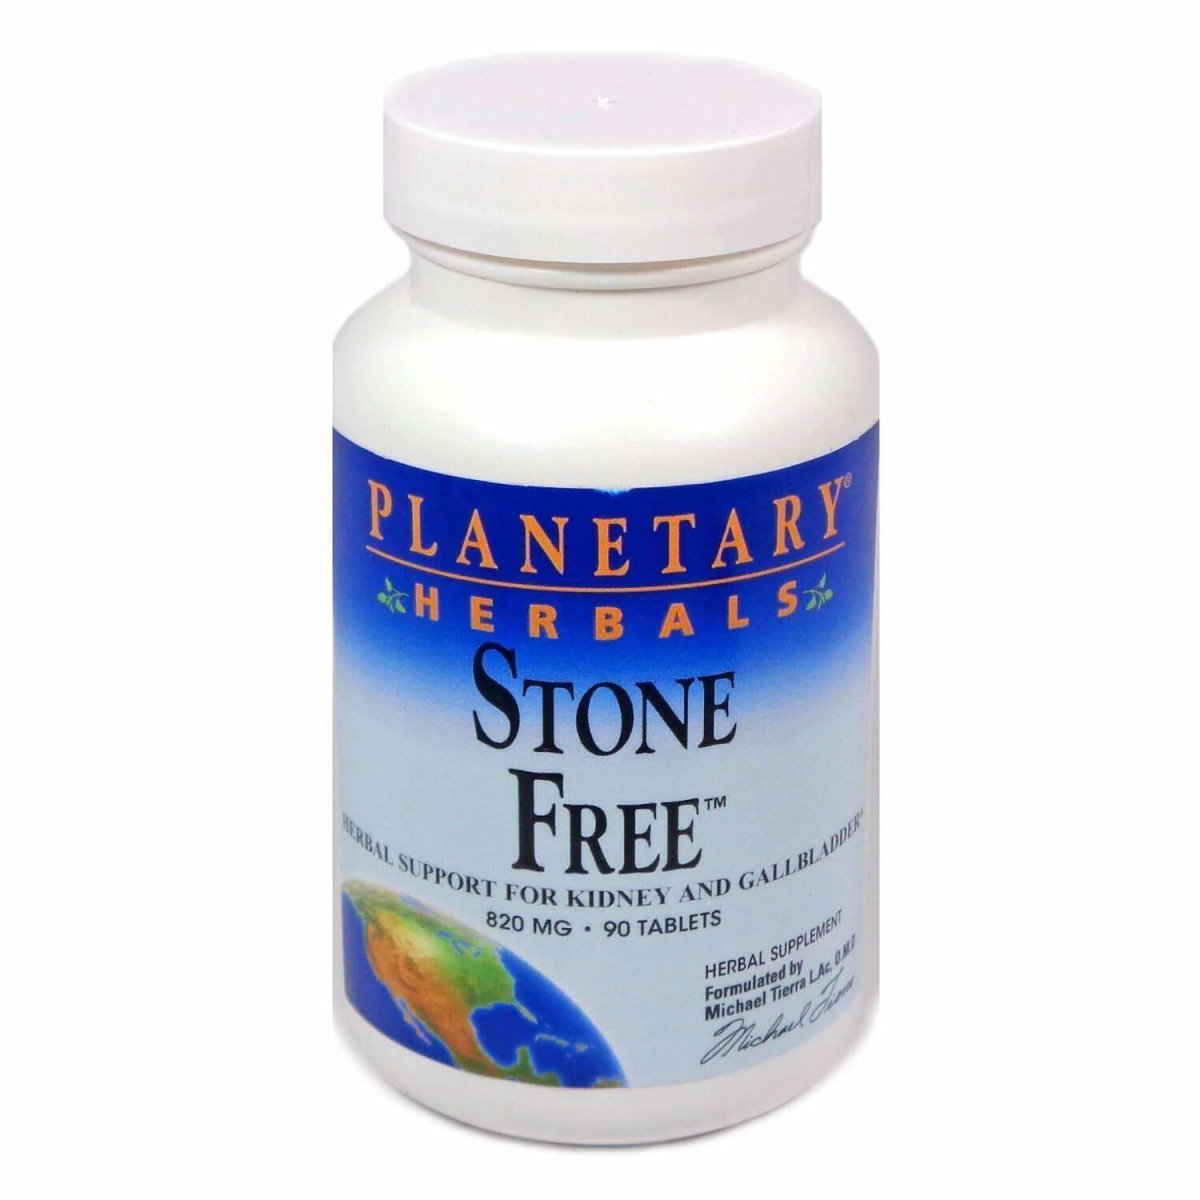 Pastillas Stone Free 820mg - 90 Tablets